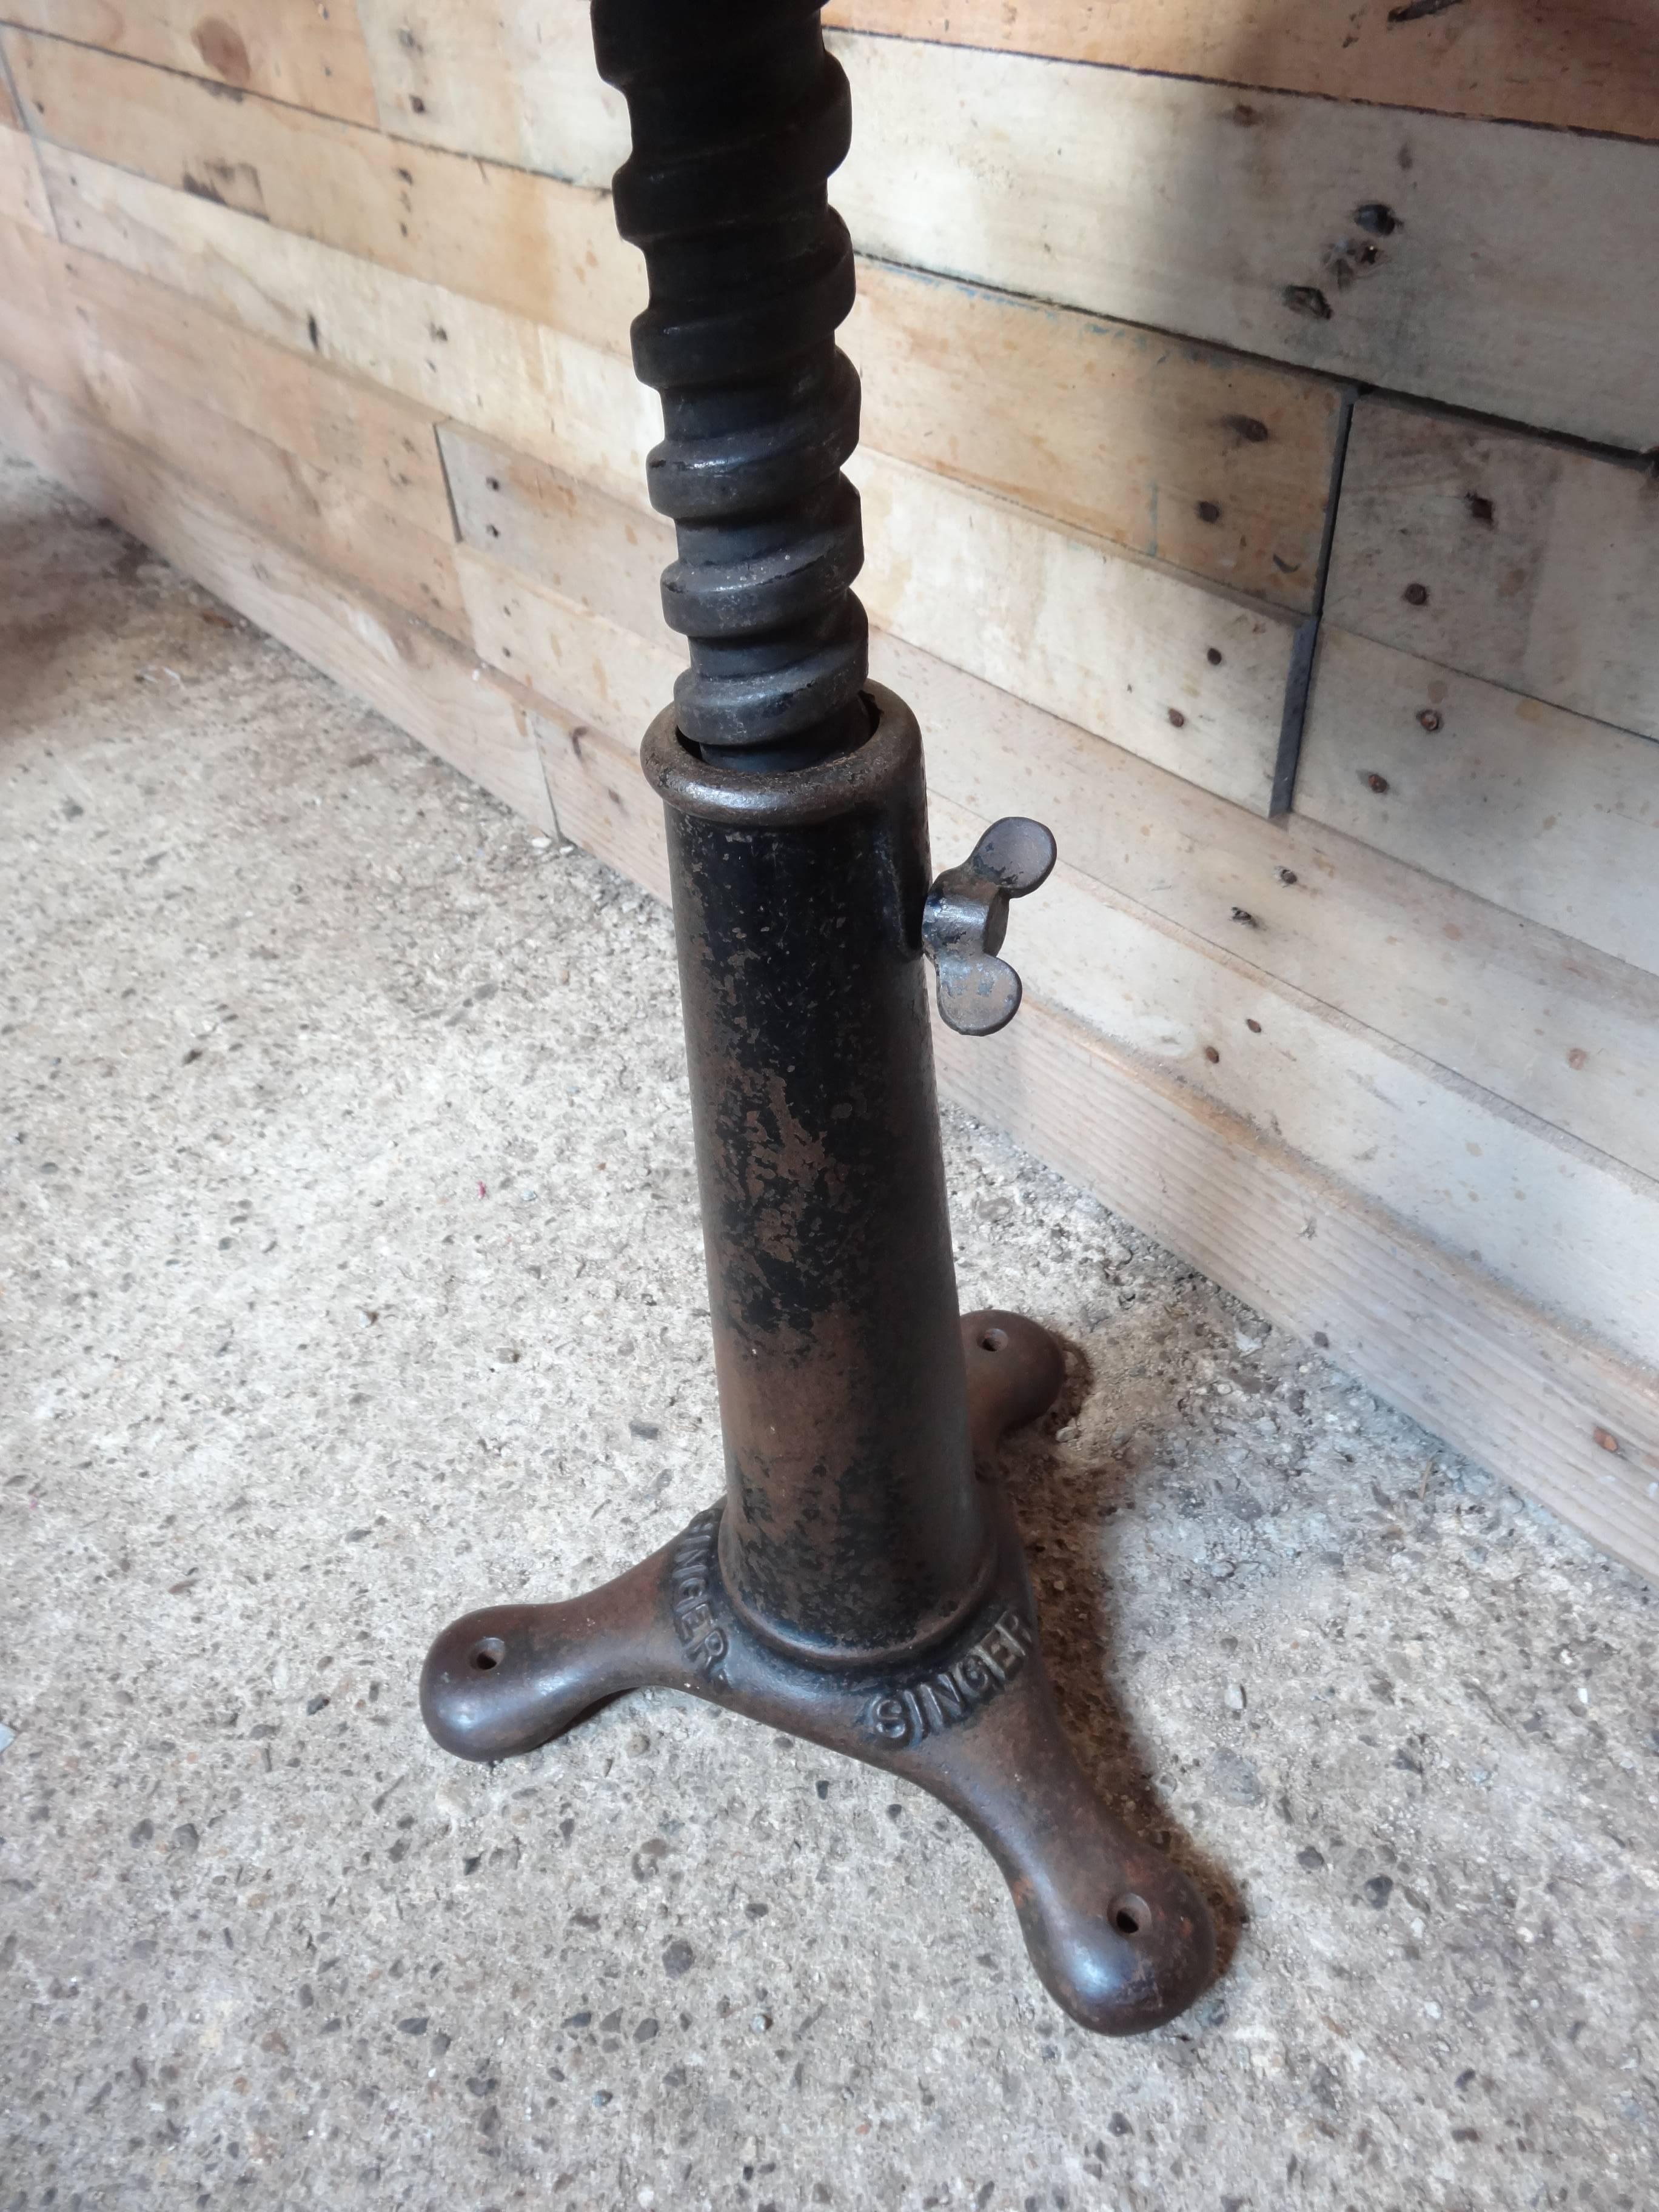 Singer cast iron vintage Industrial stool

Measures: H 44 / 63cm, D 30cm, W 30cm.